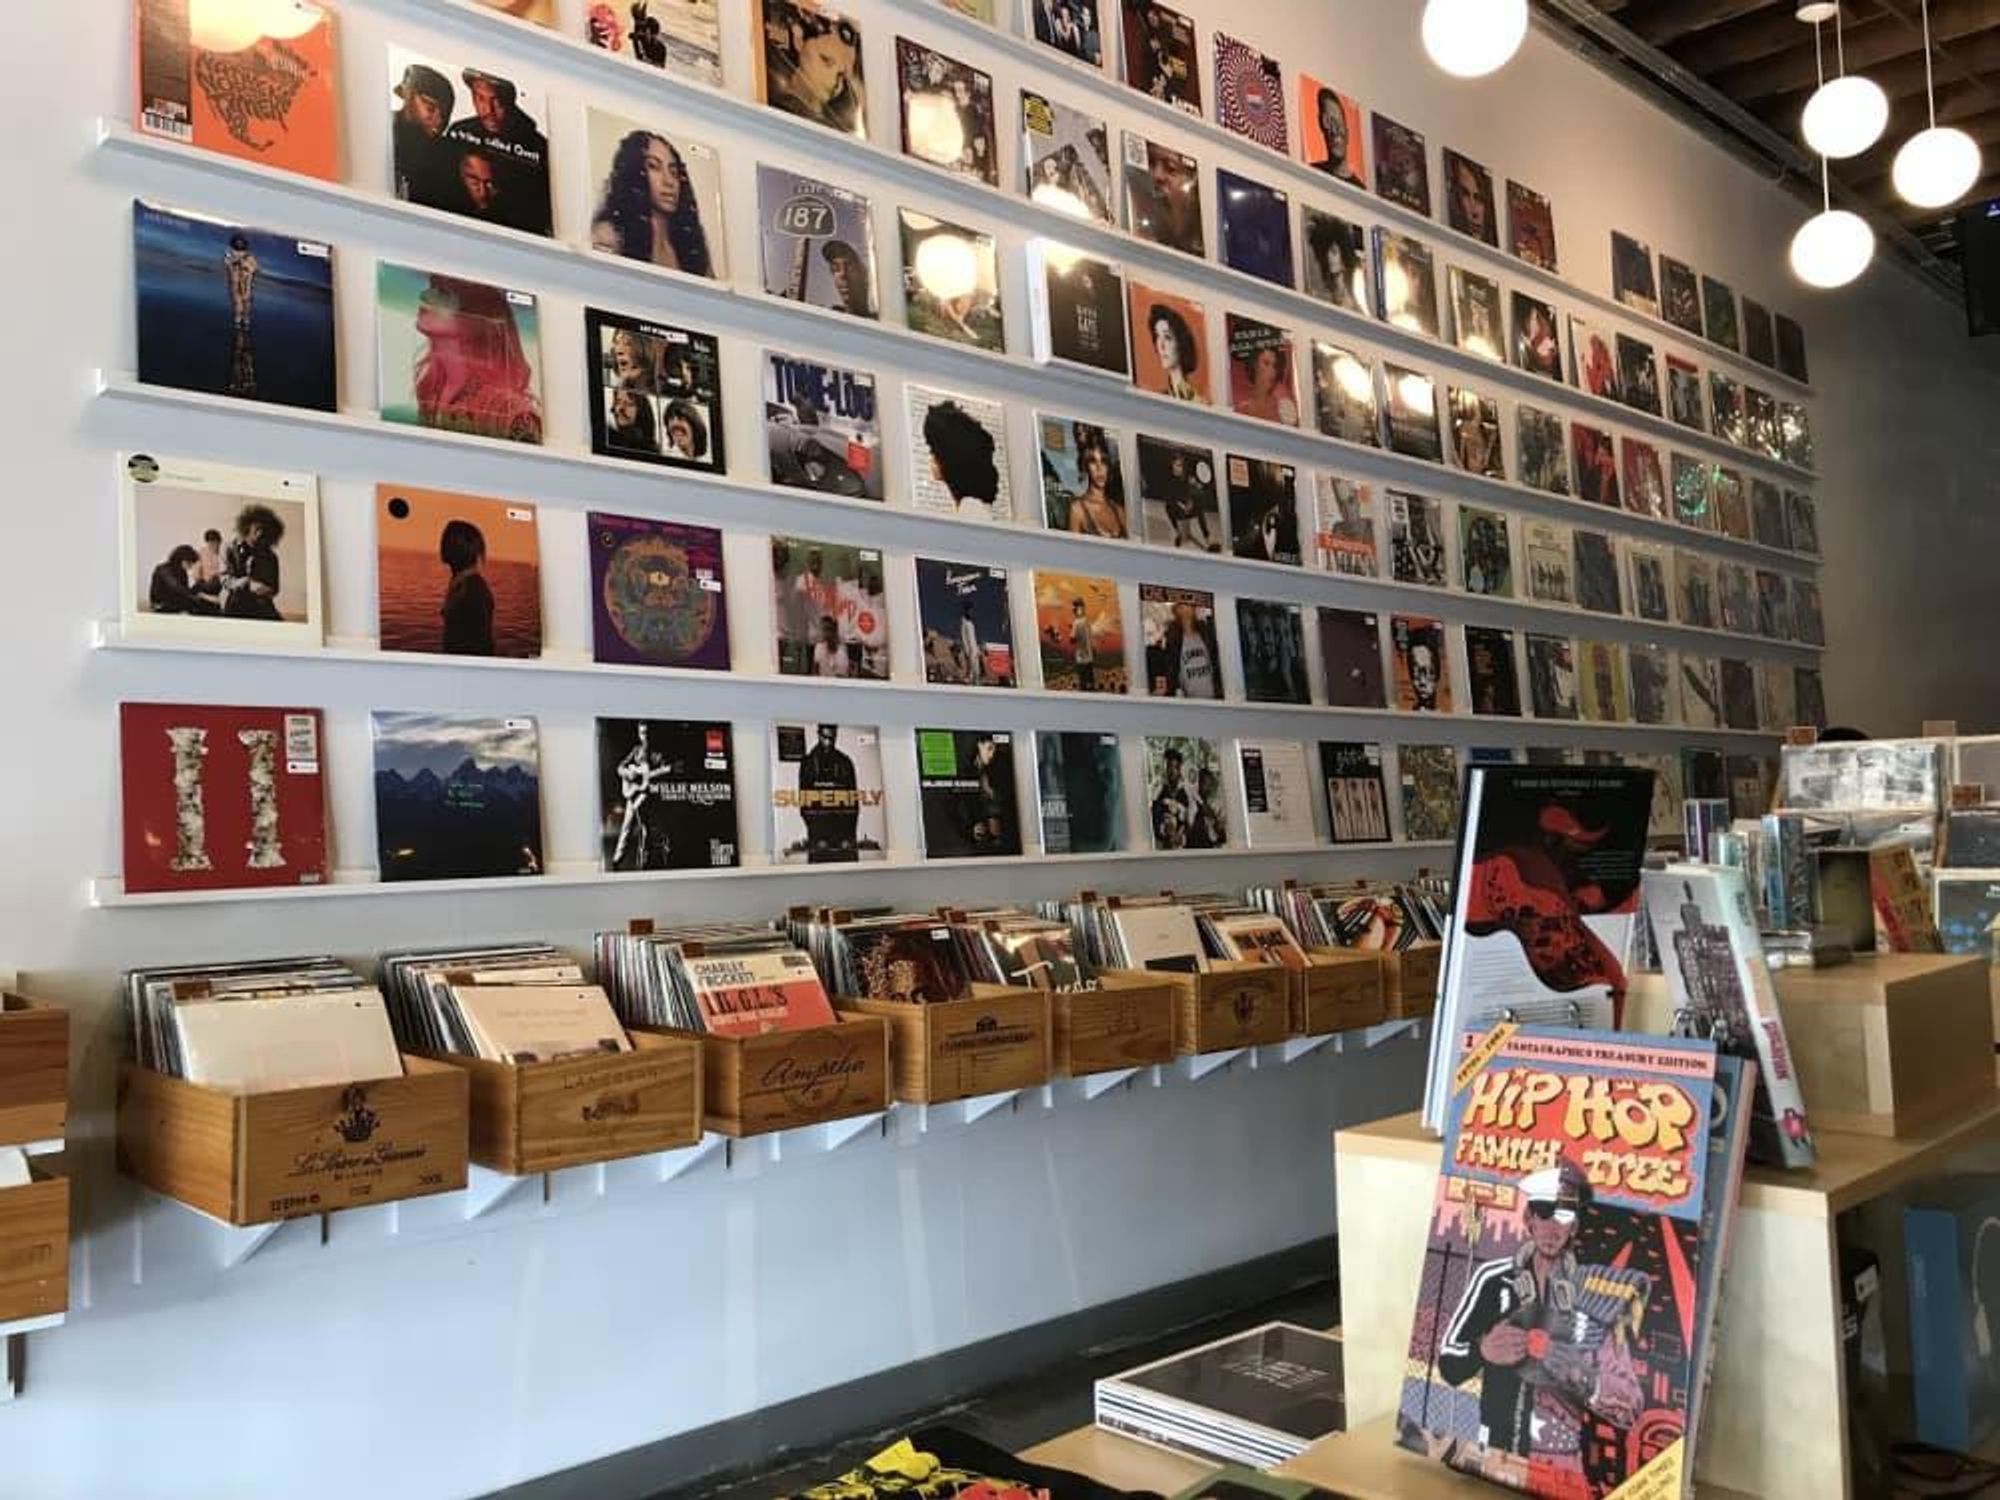 vinyl store